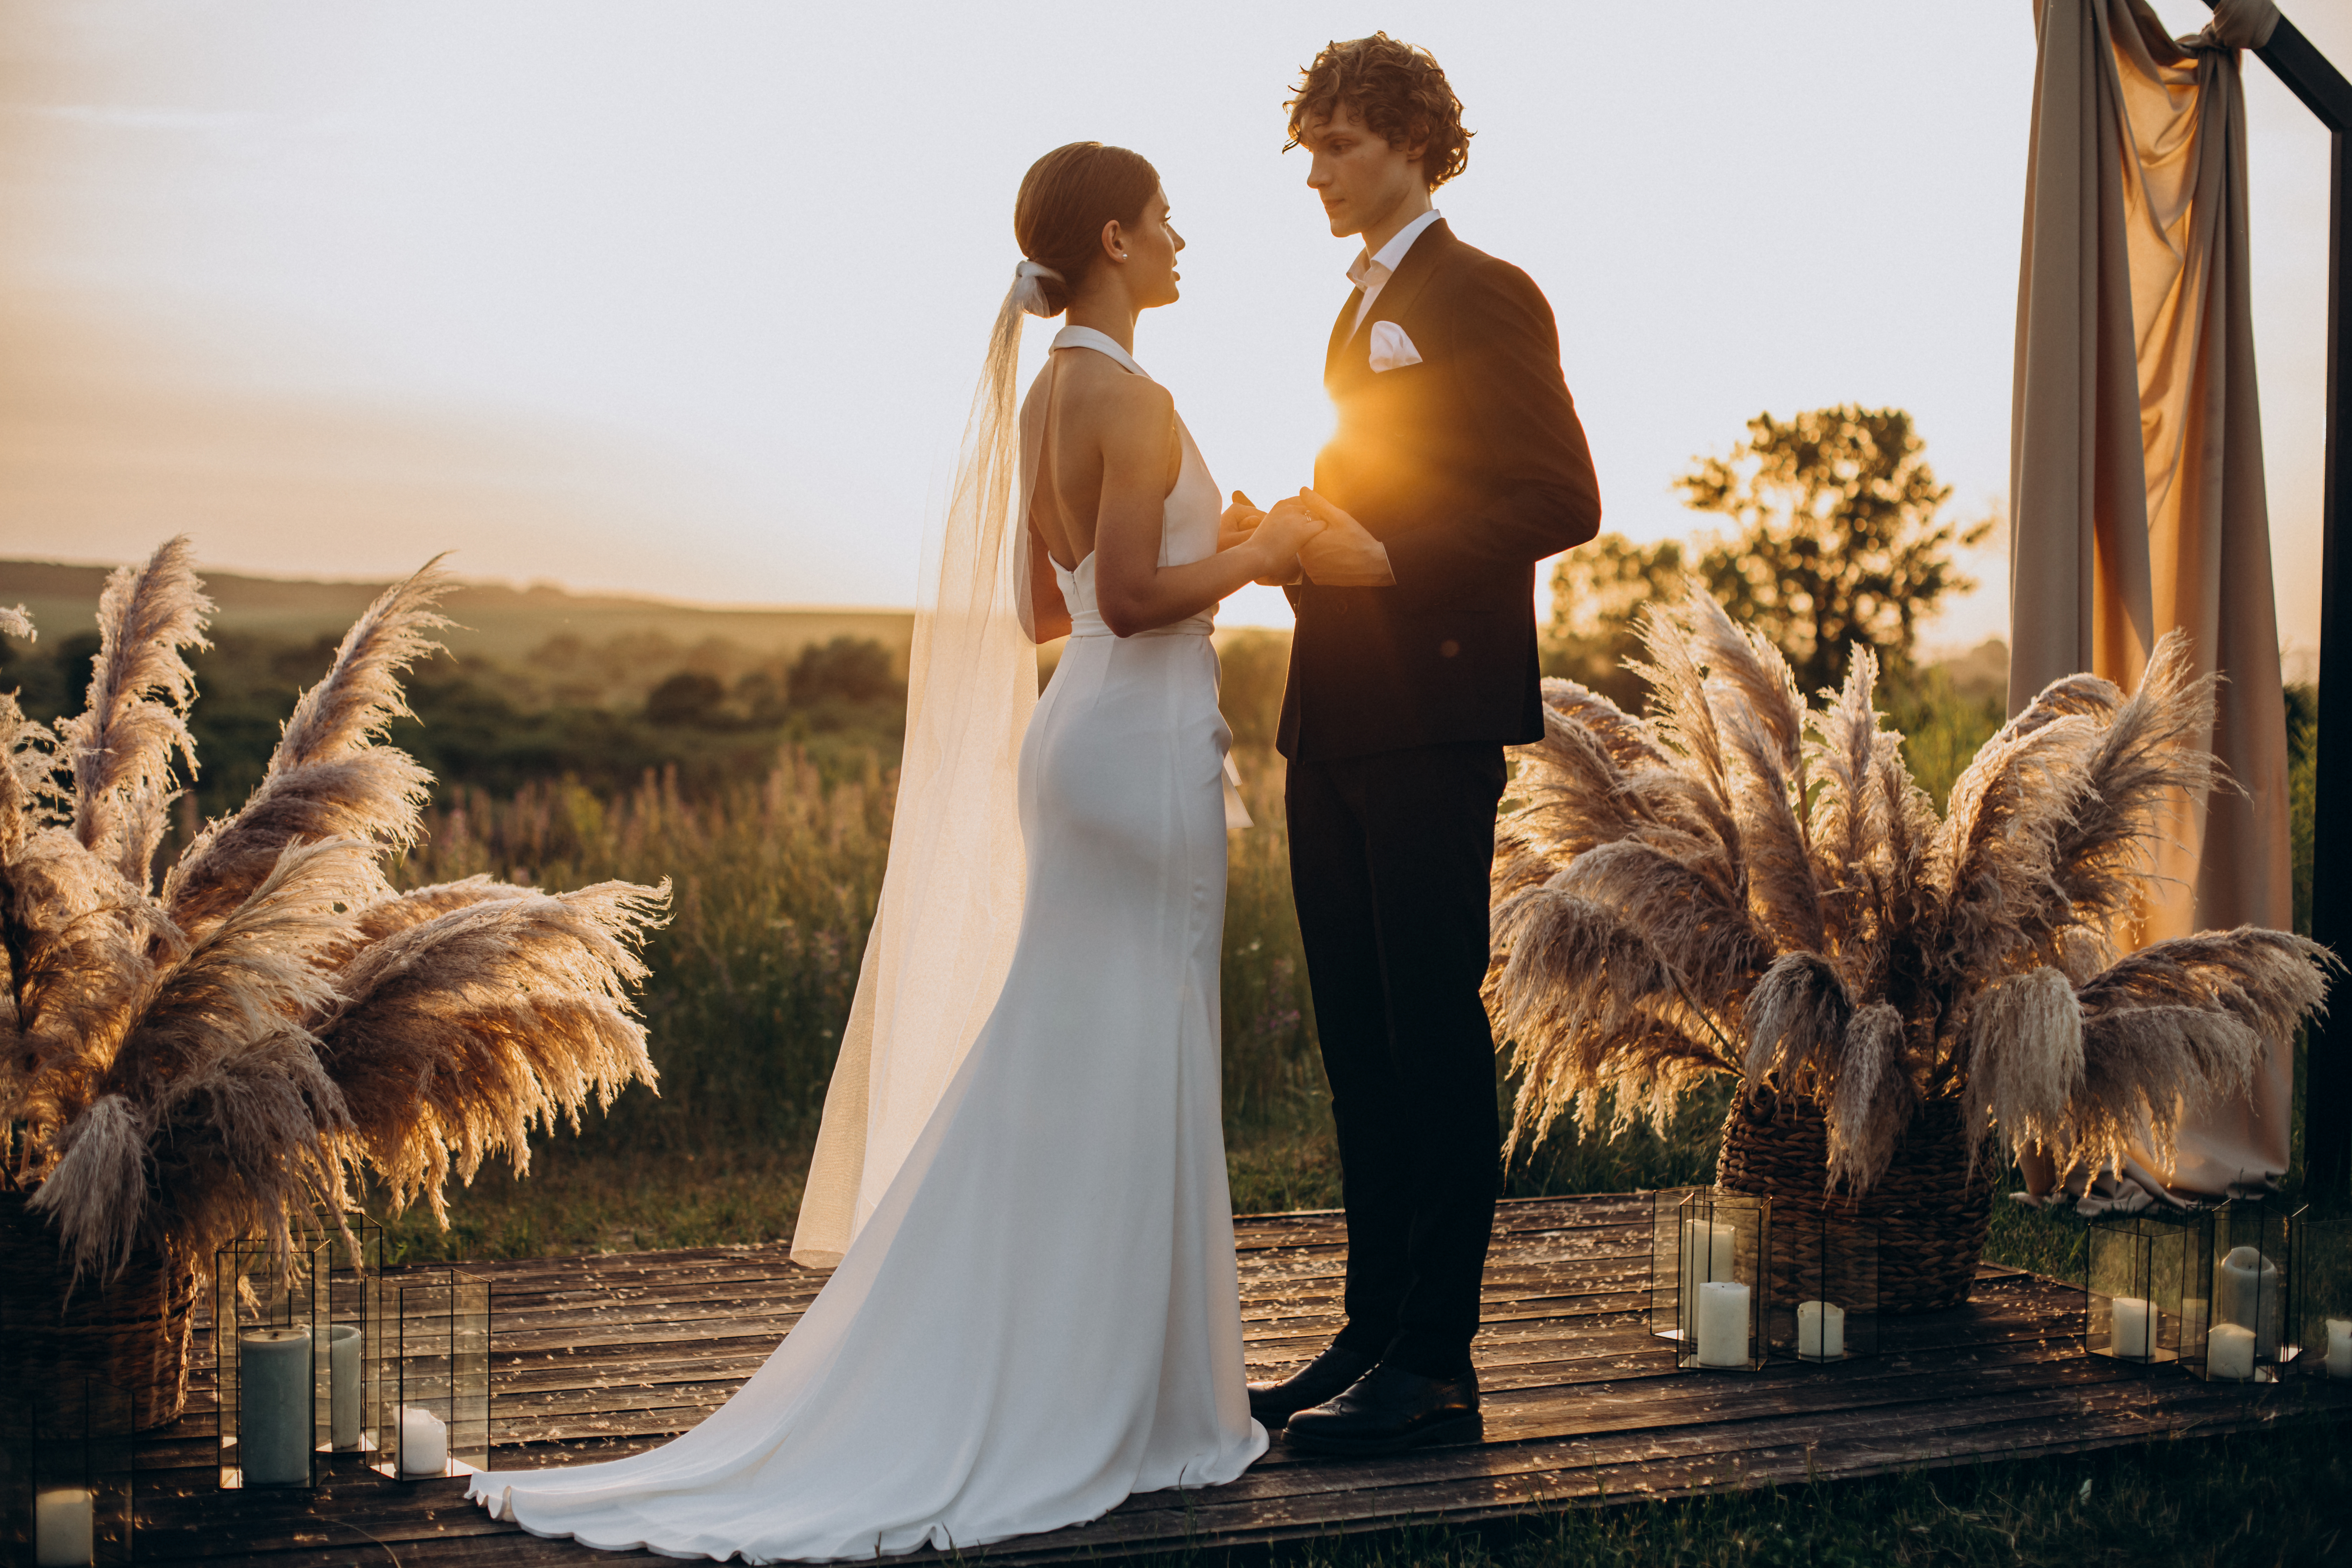 Una pareja de recién casados | Fuente: Shutterstock